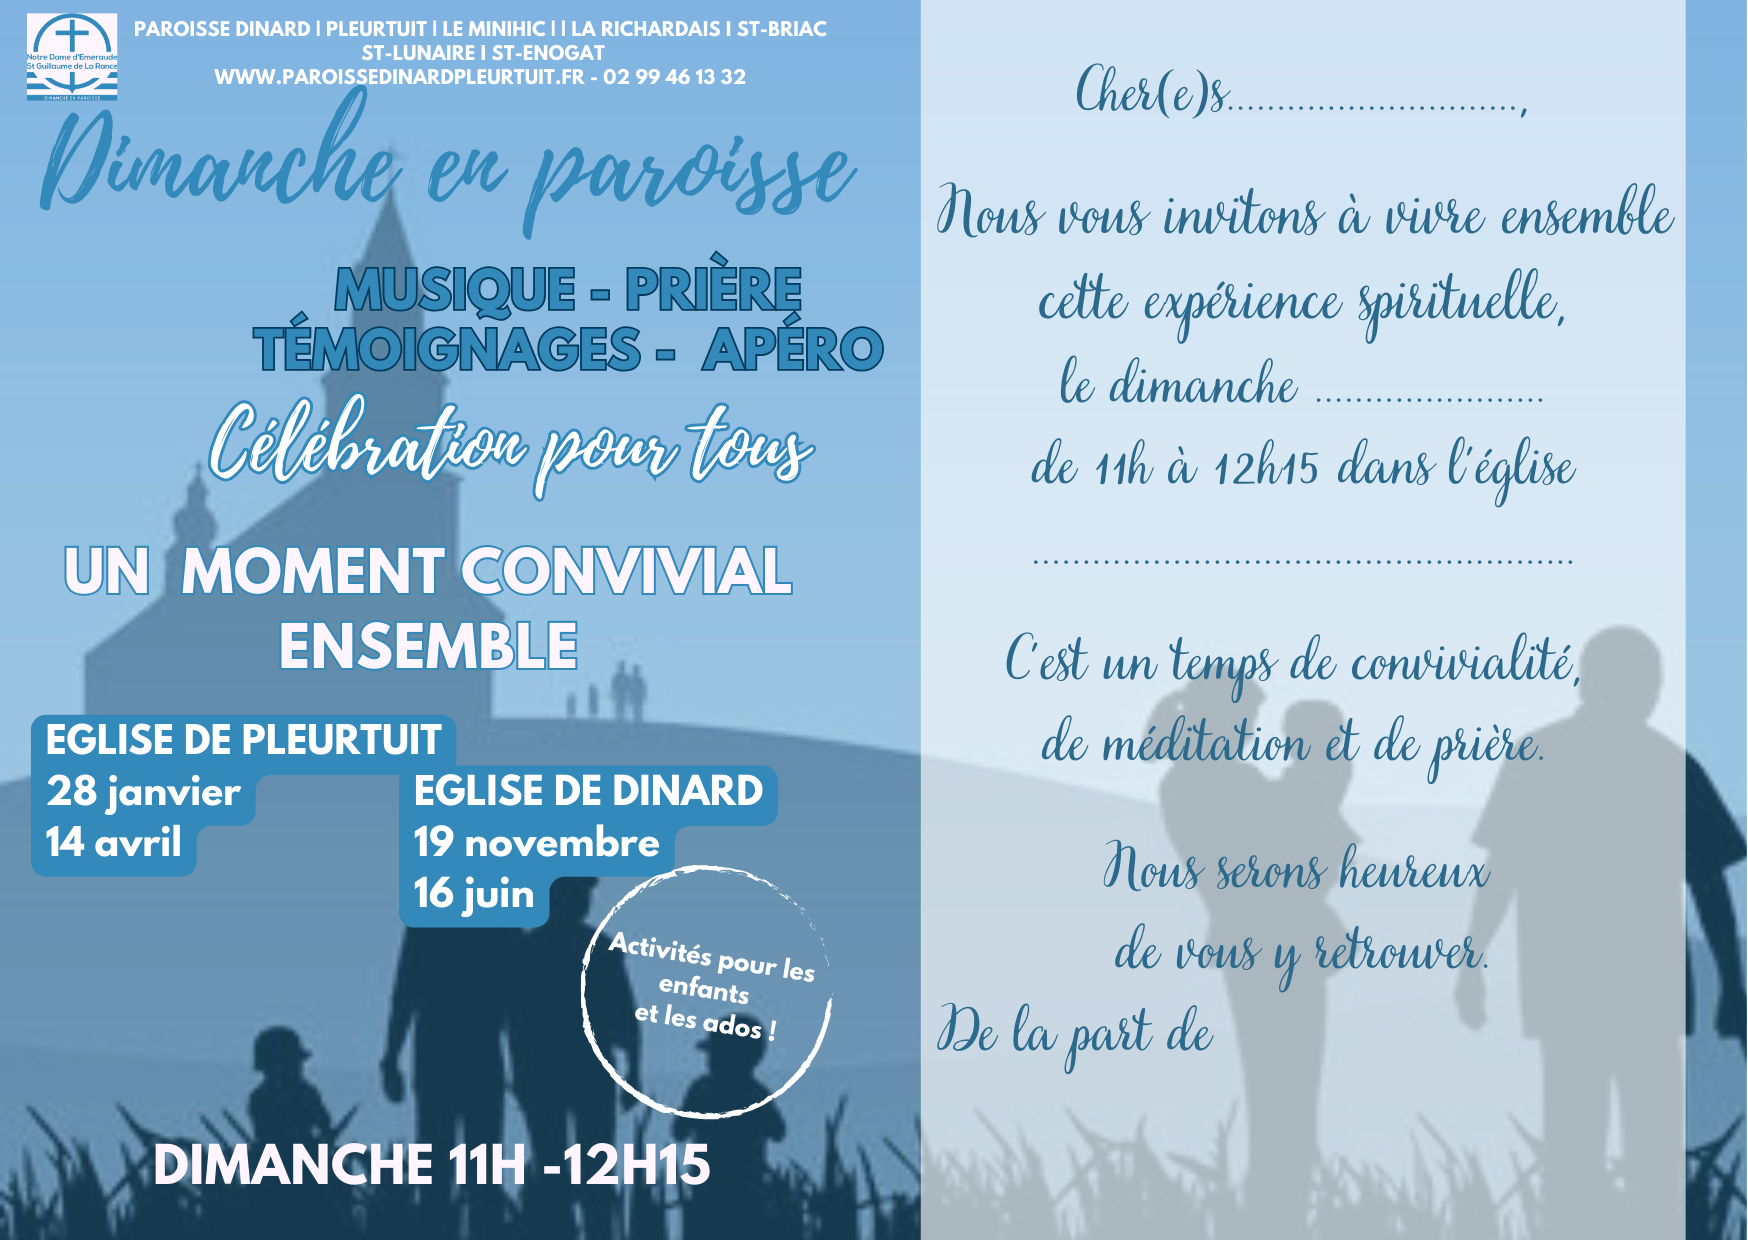 carte d'invitation DEP paroisse Dinard-Pleurtuit recto